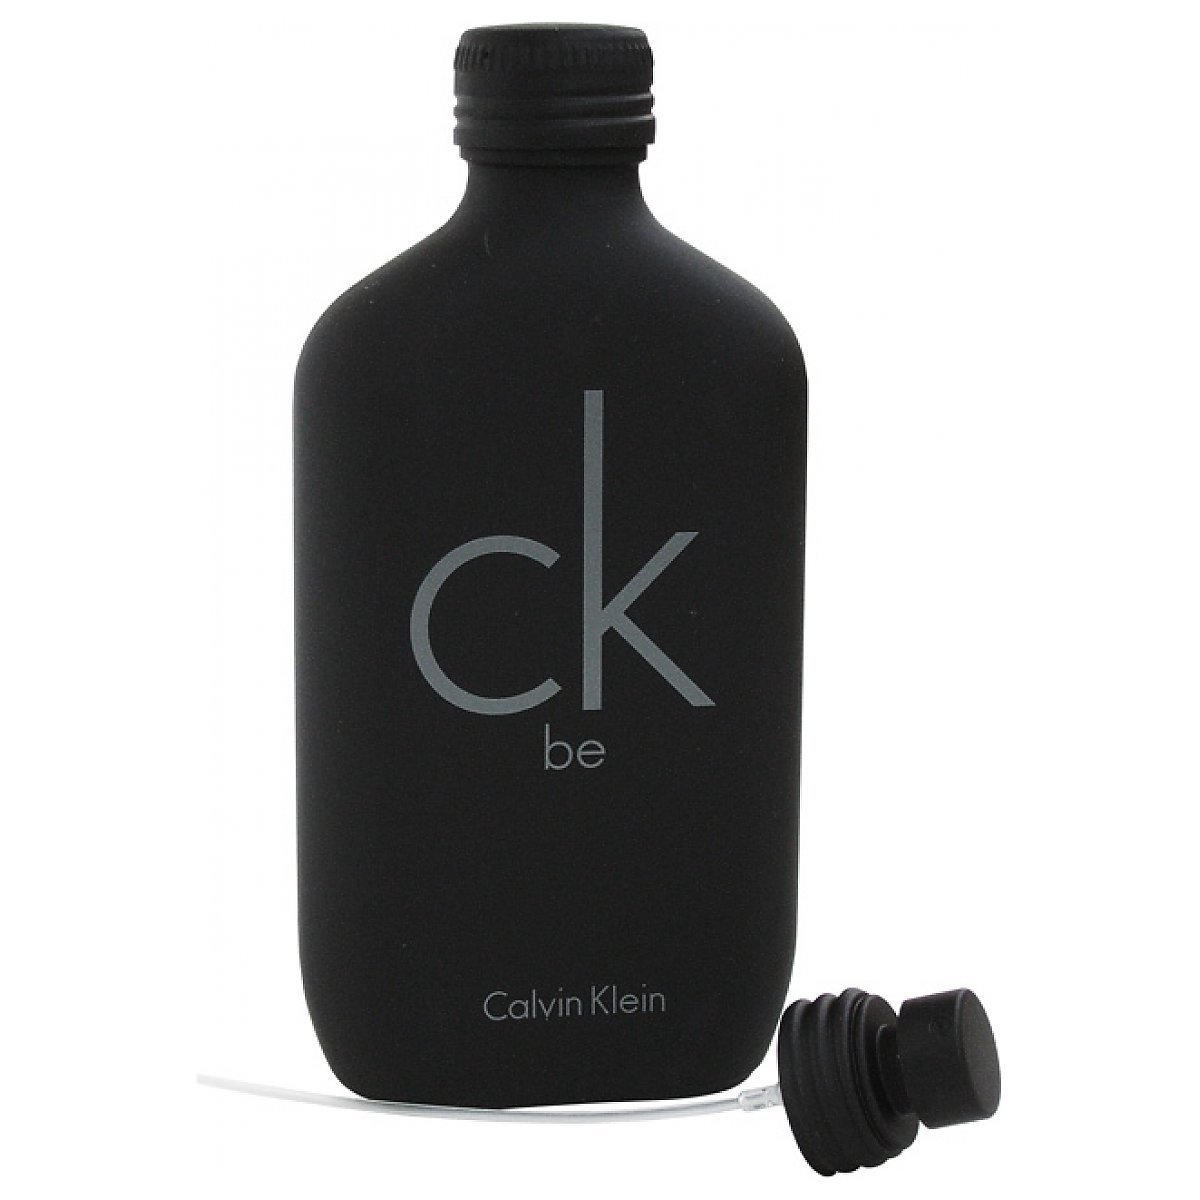 Calvin Klein CK Be Woda toaletowa spray 200ml - Perfumeria Dolce.pl